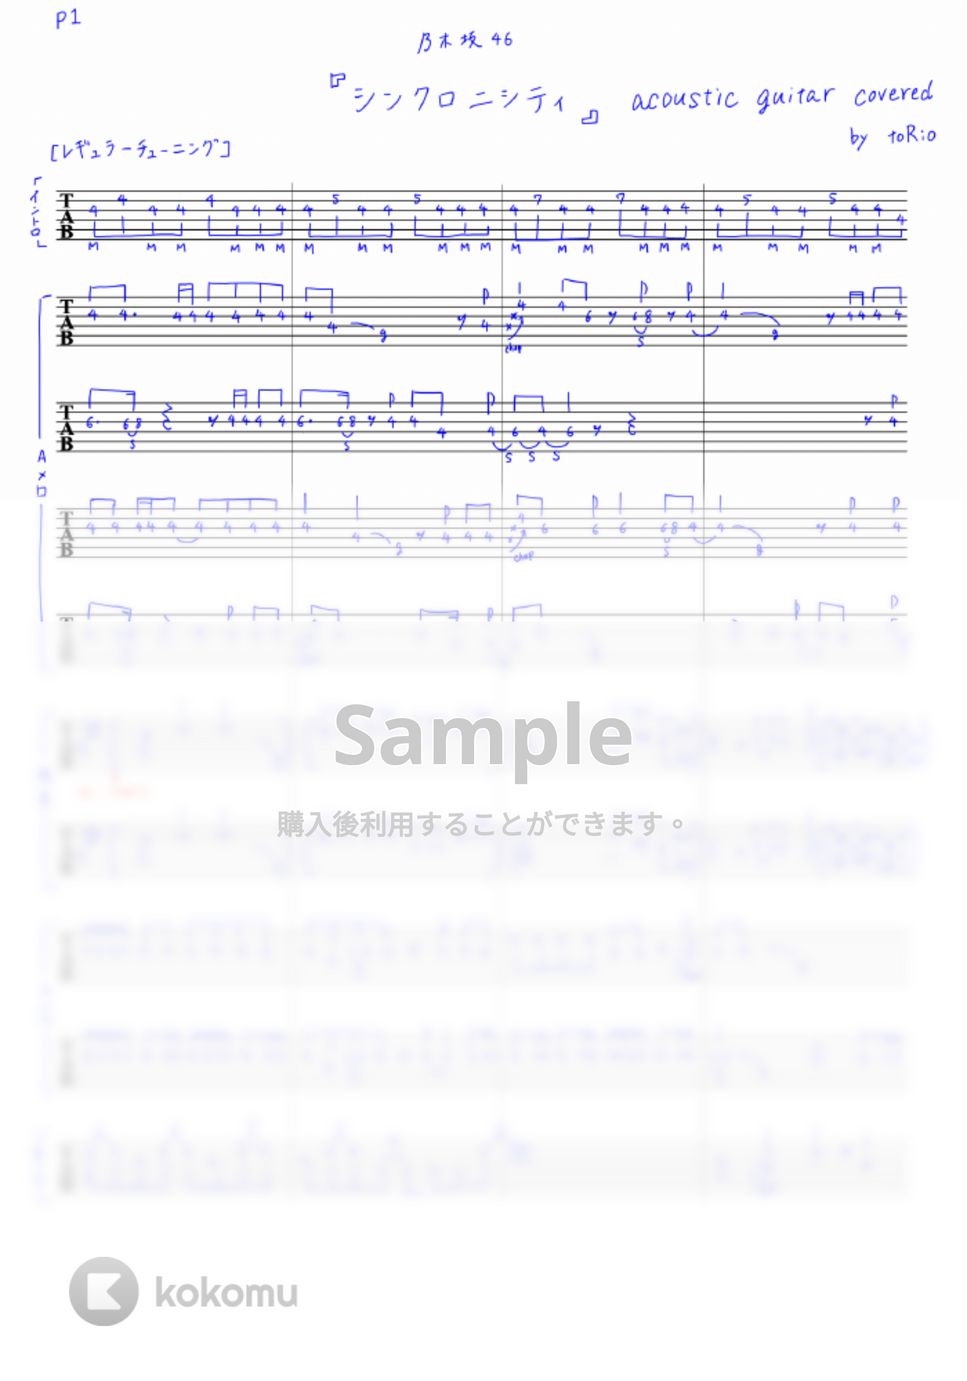 乃木坂46 - シンクロニシティ (アコースティックギターのインストcover) by toRio